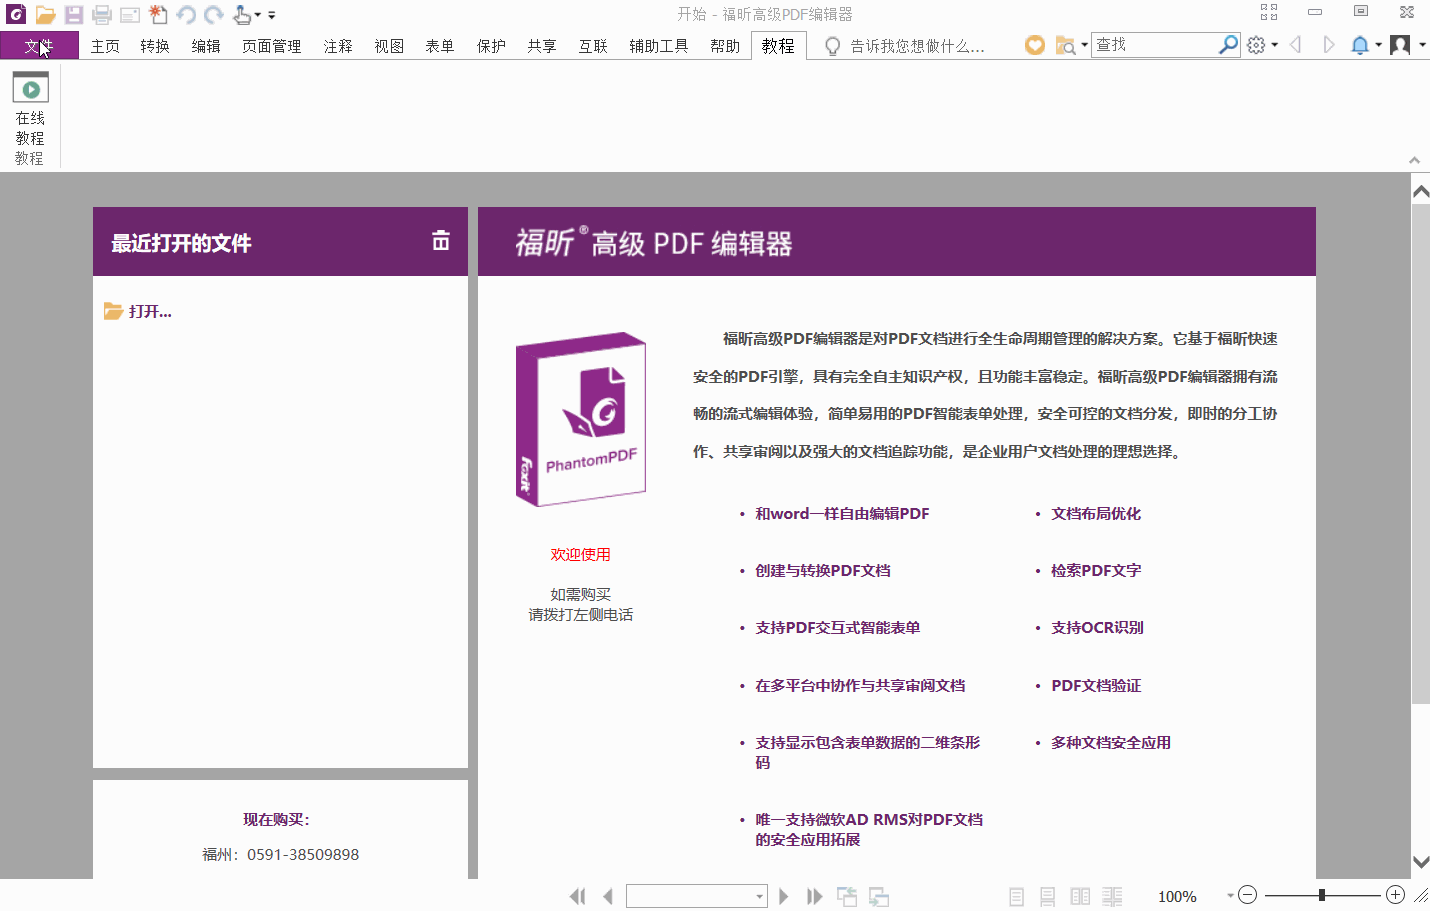 福昕PDF高级编辑器的功能